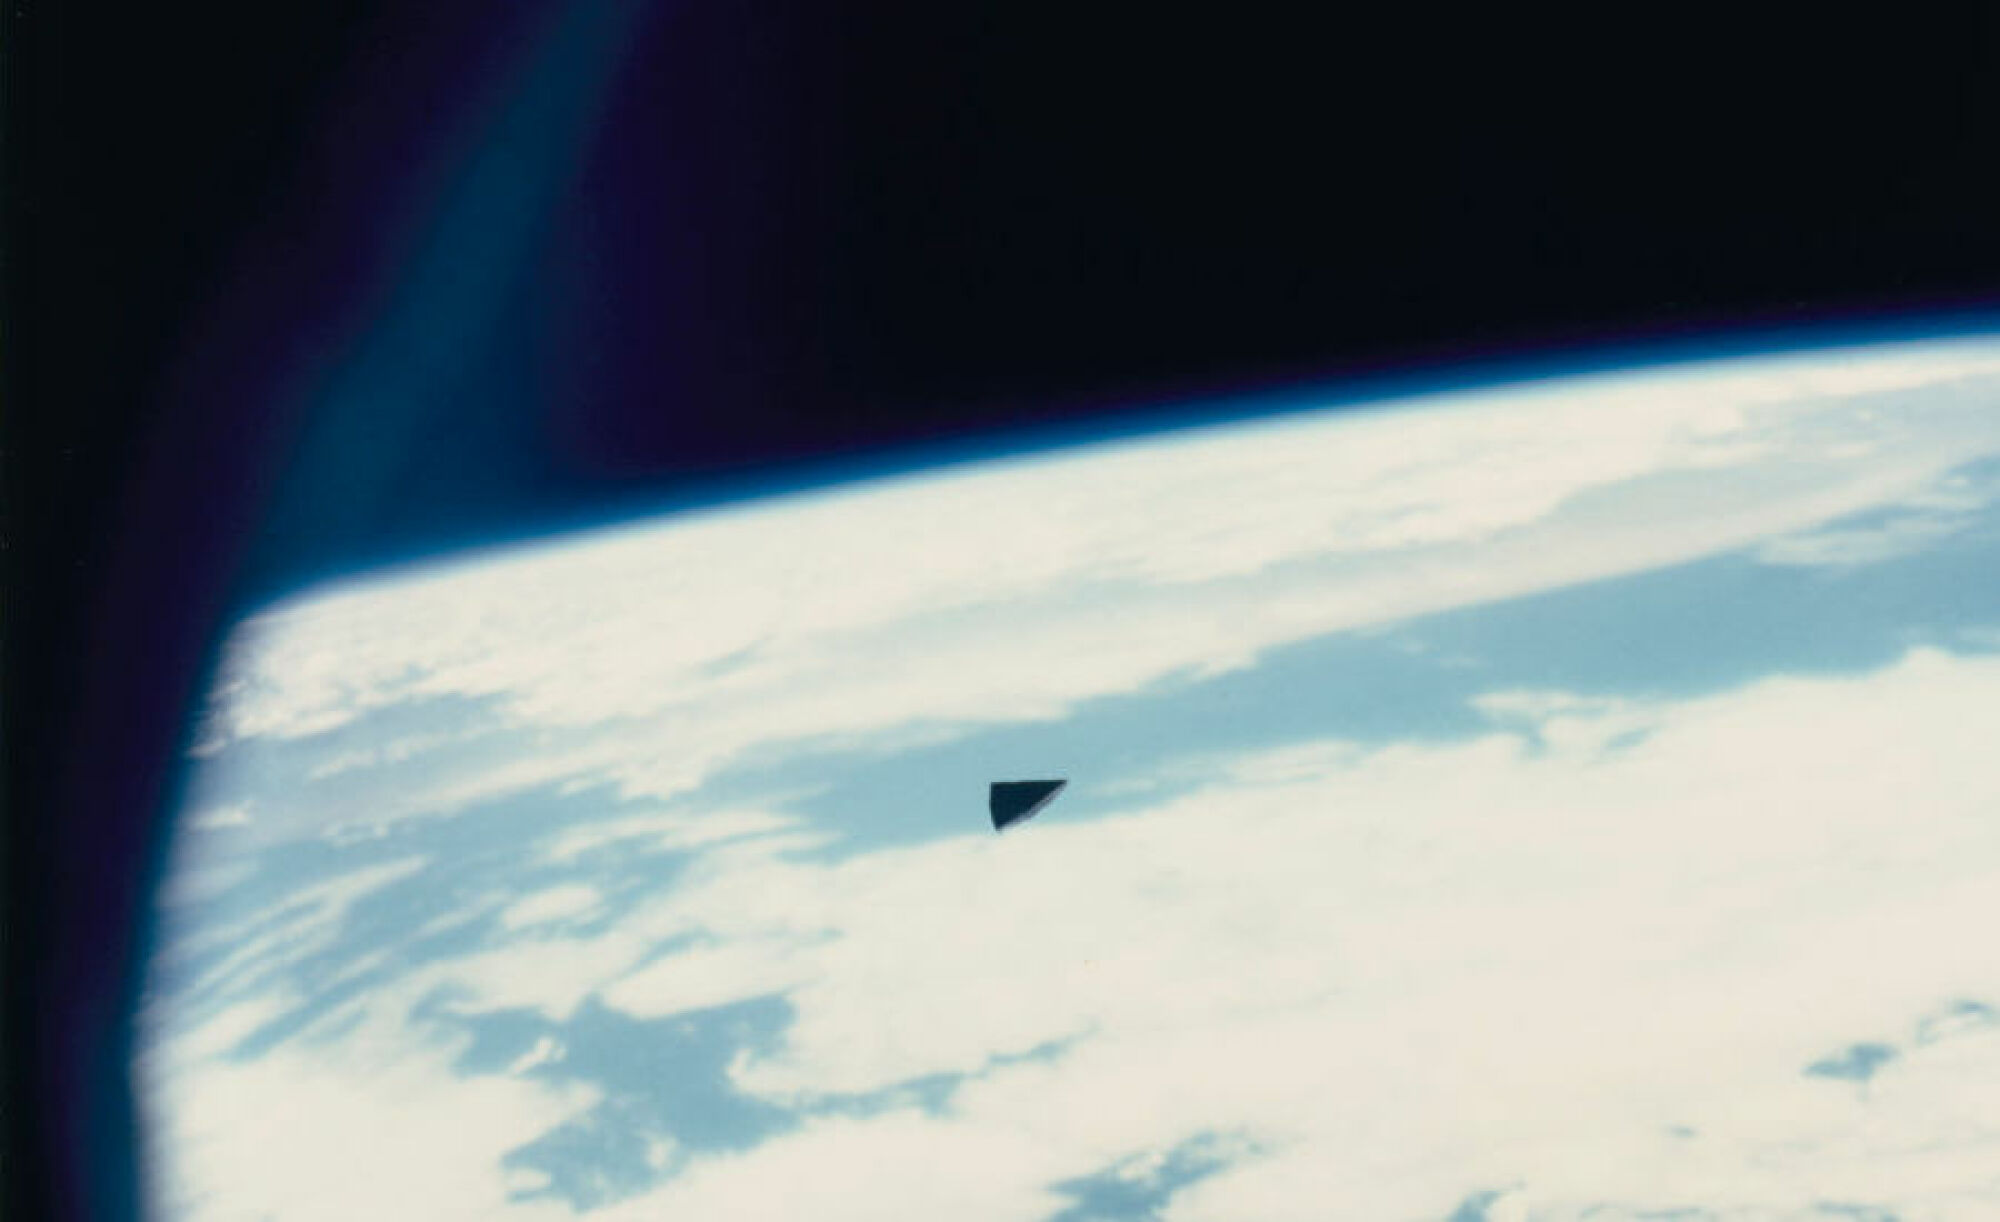 Des astronautes américains voient des débris voler dans l'espace